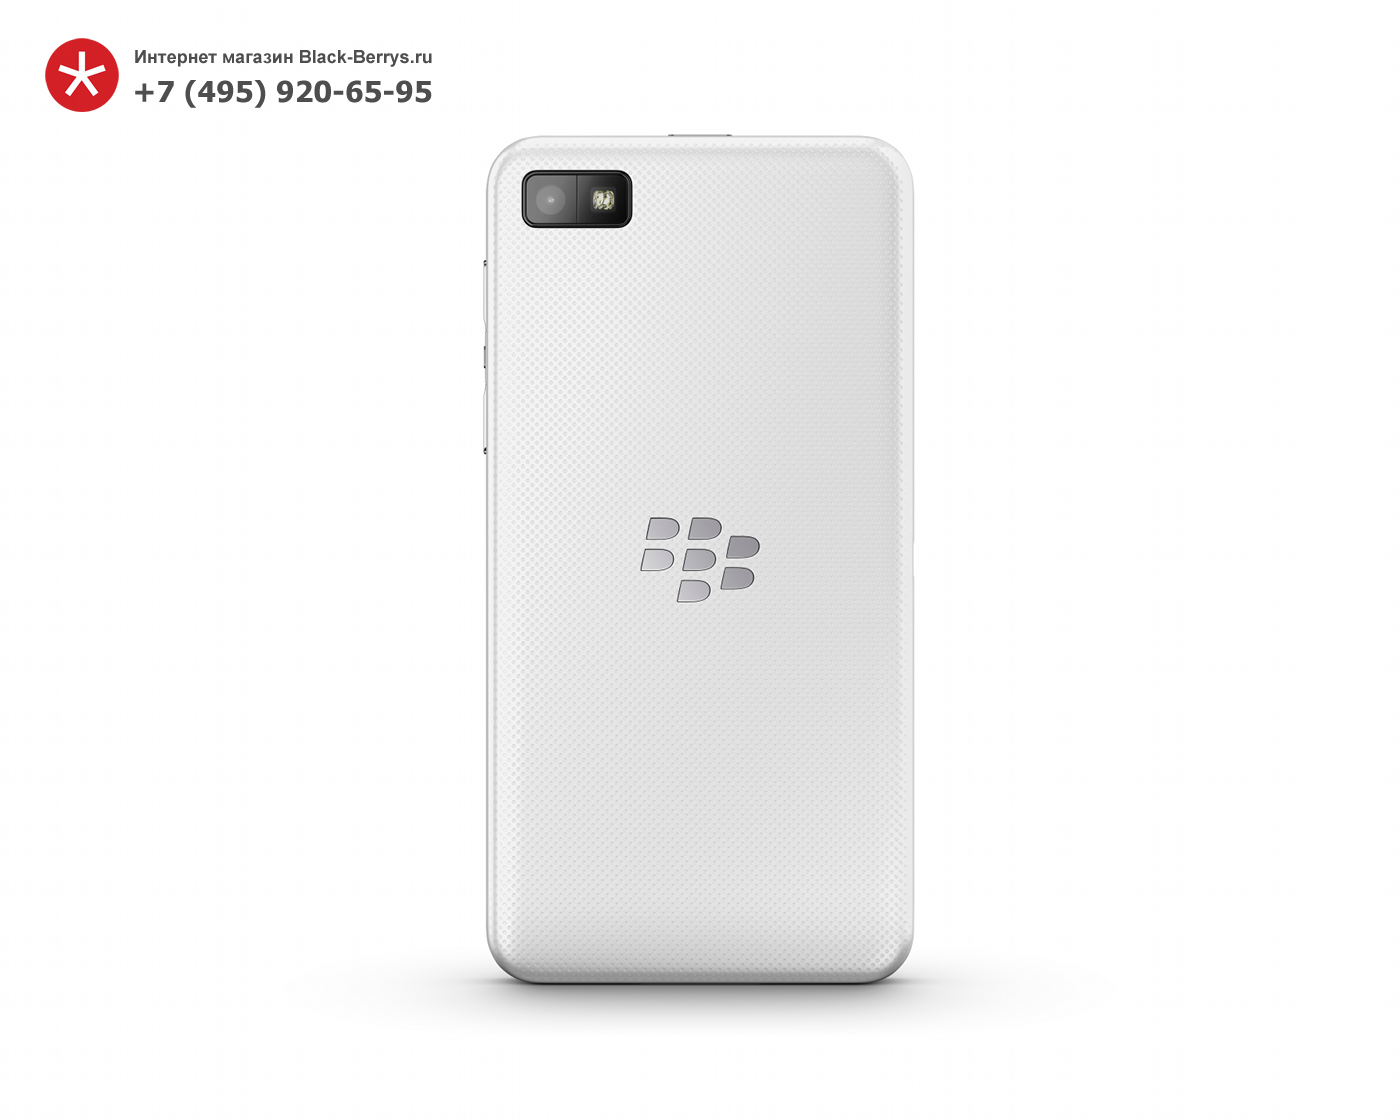 BlackBerry Z10 White 3G